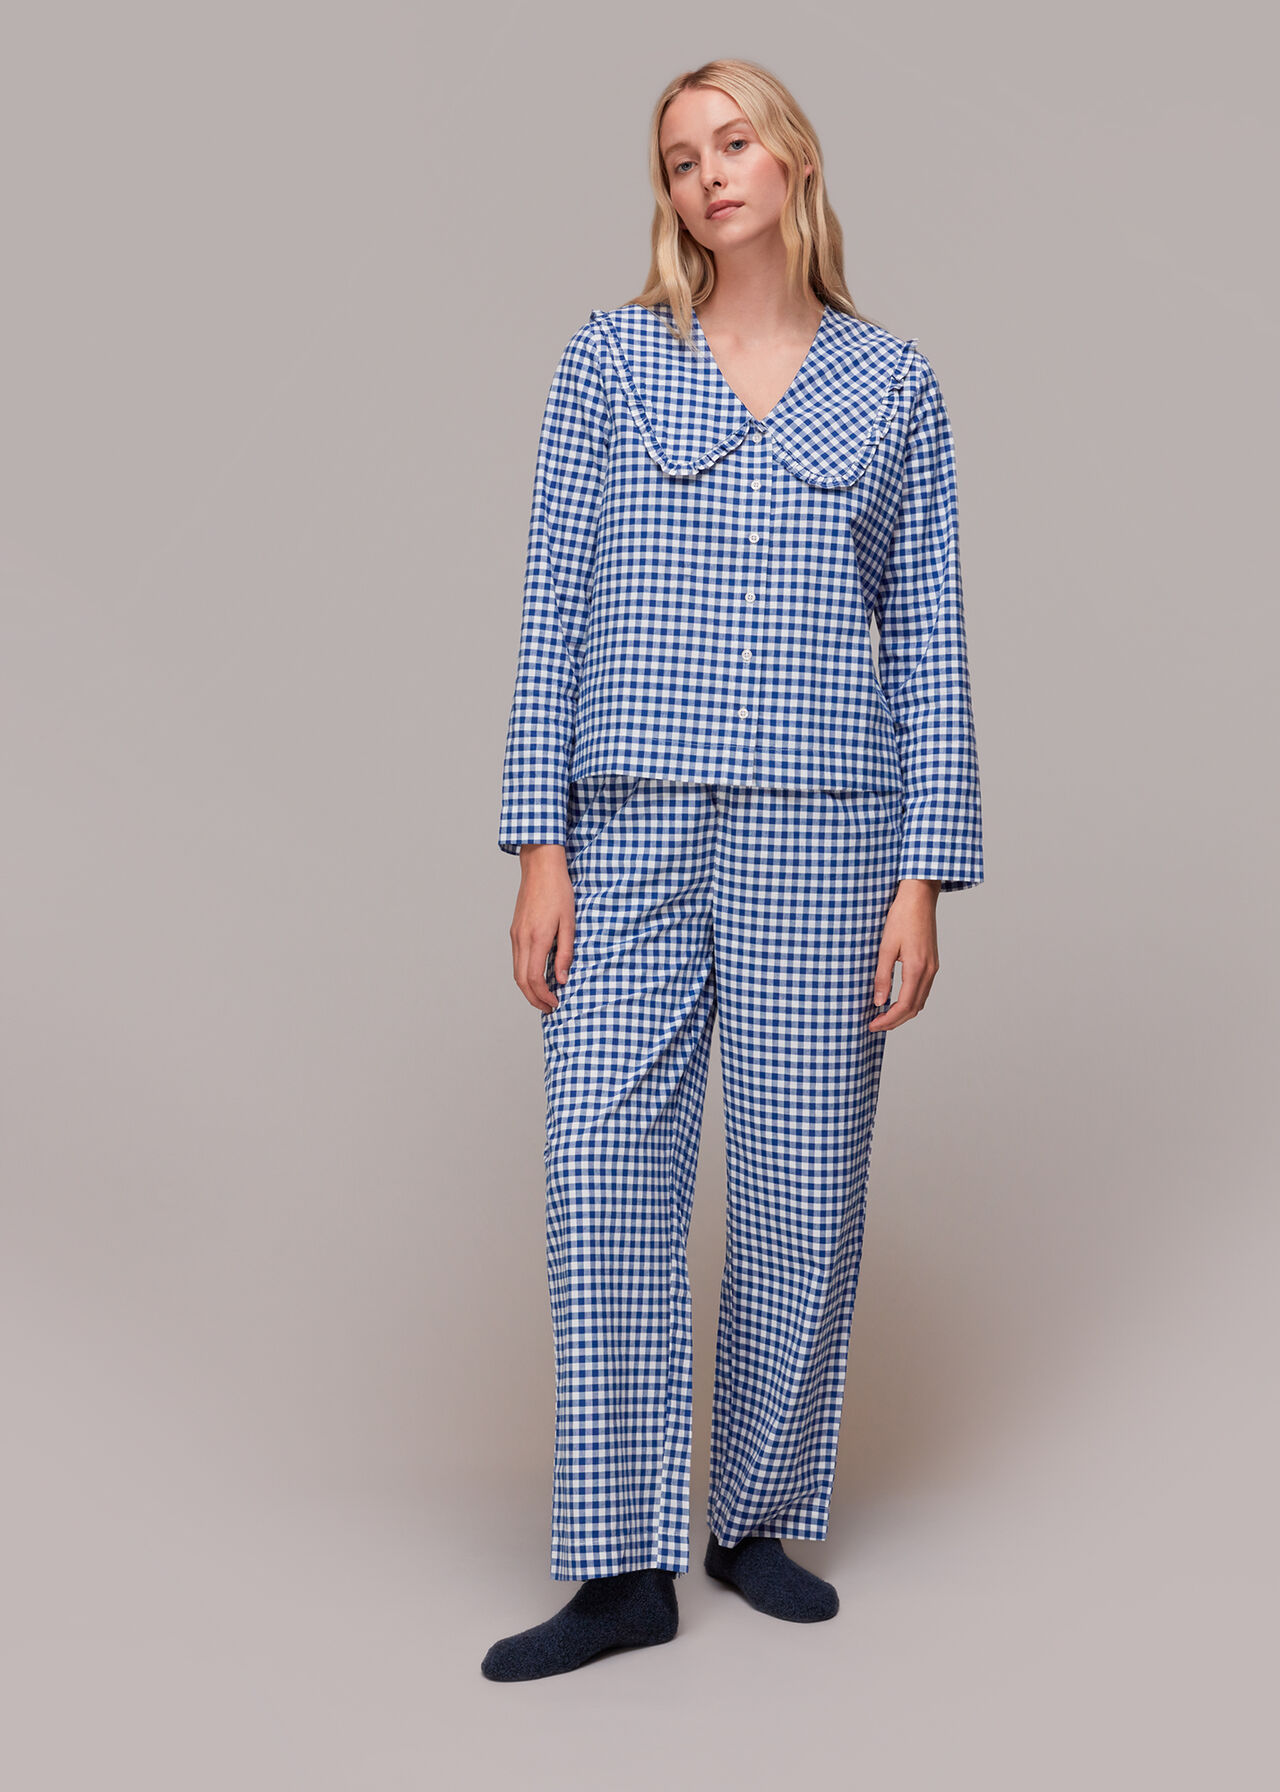 Women's Luxurious Pyjamas, Pyjama Sets, Whistles UK